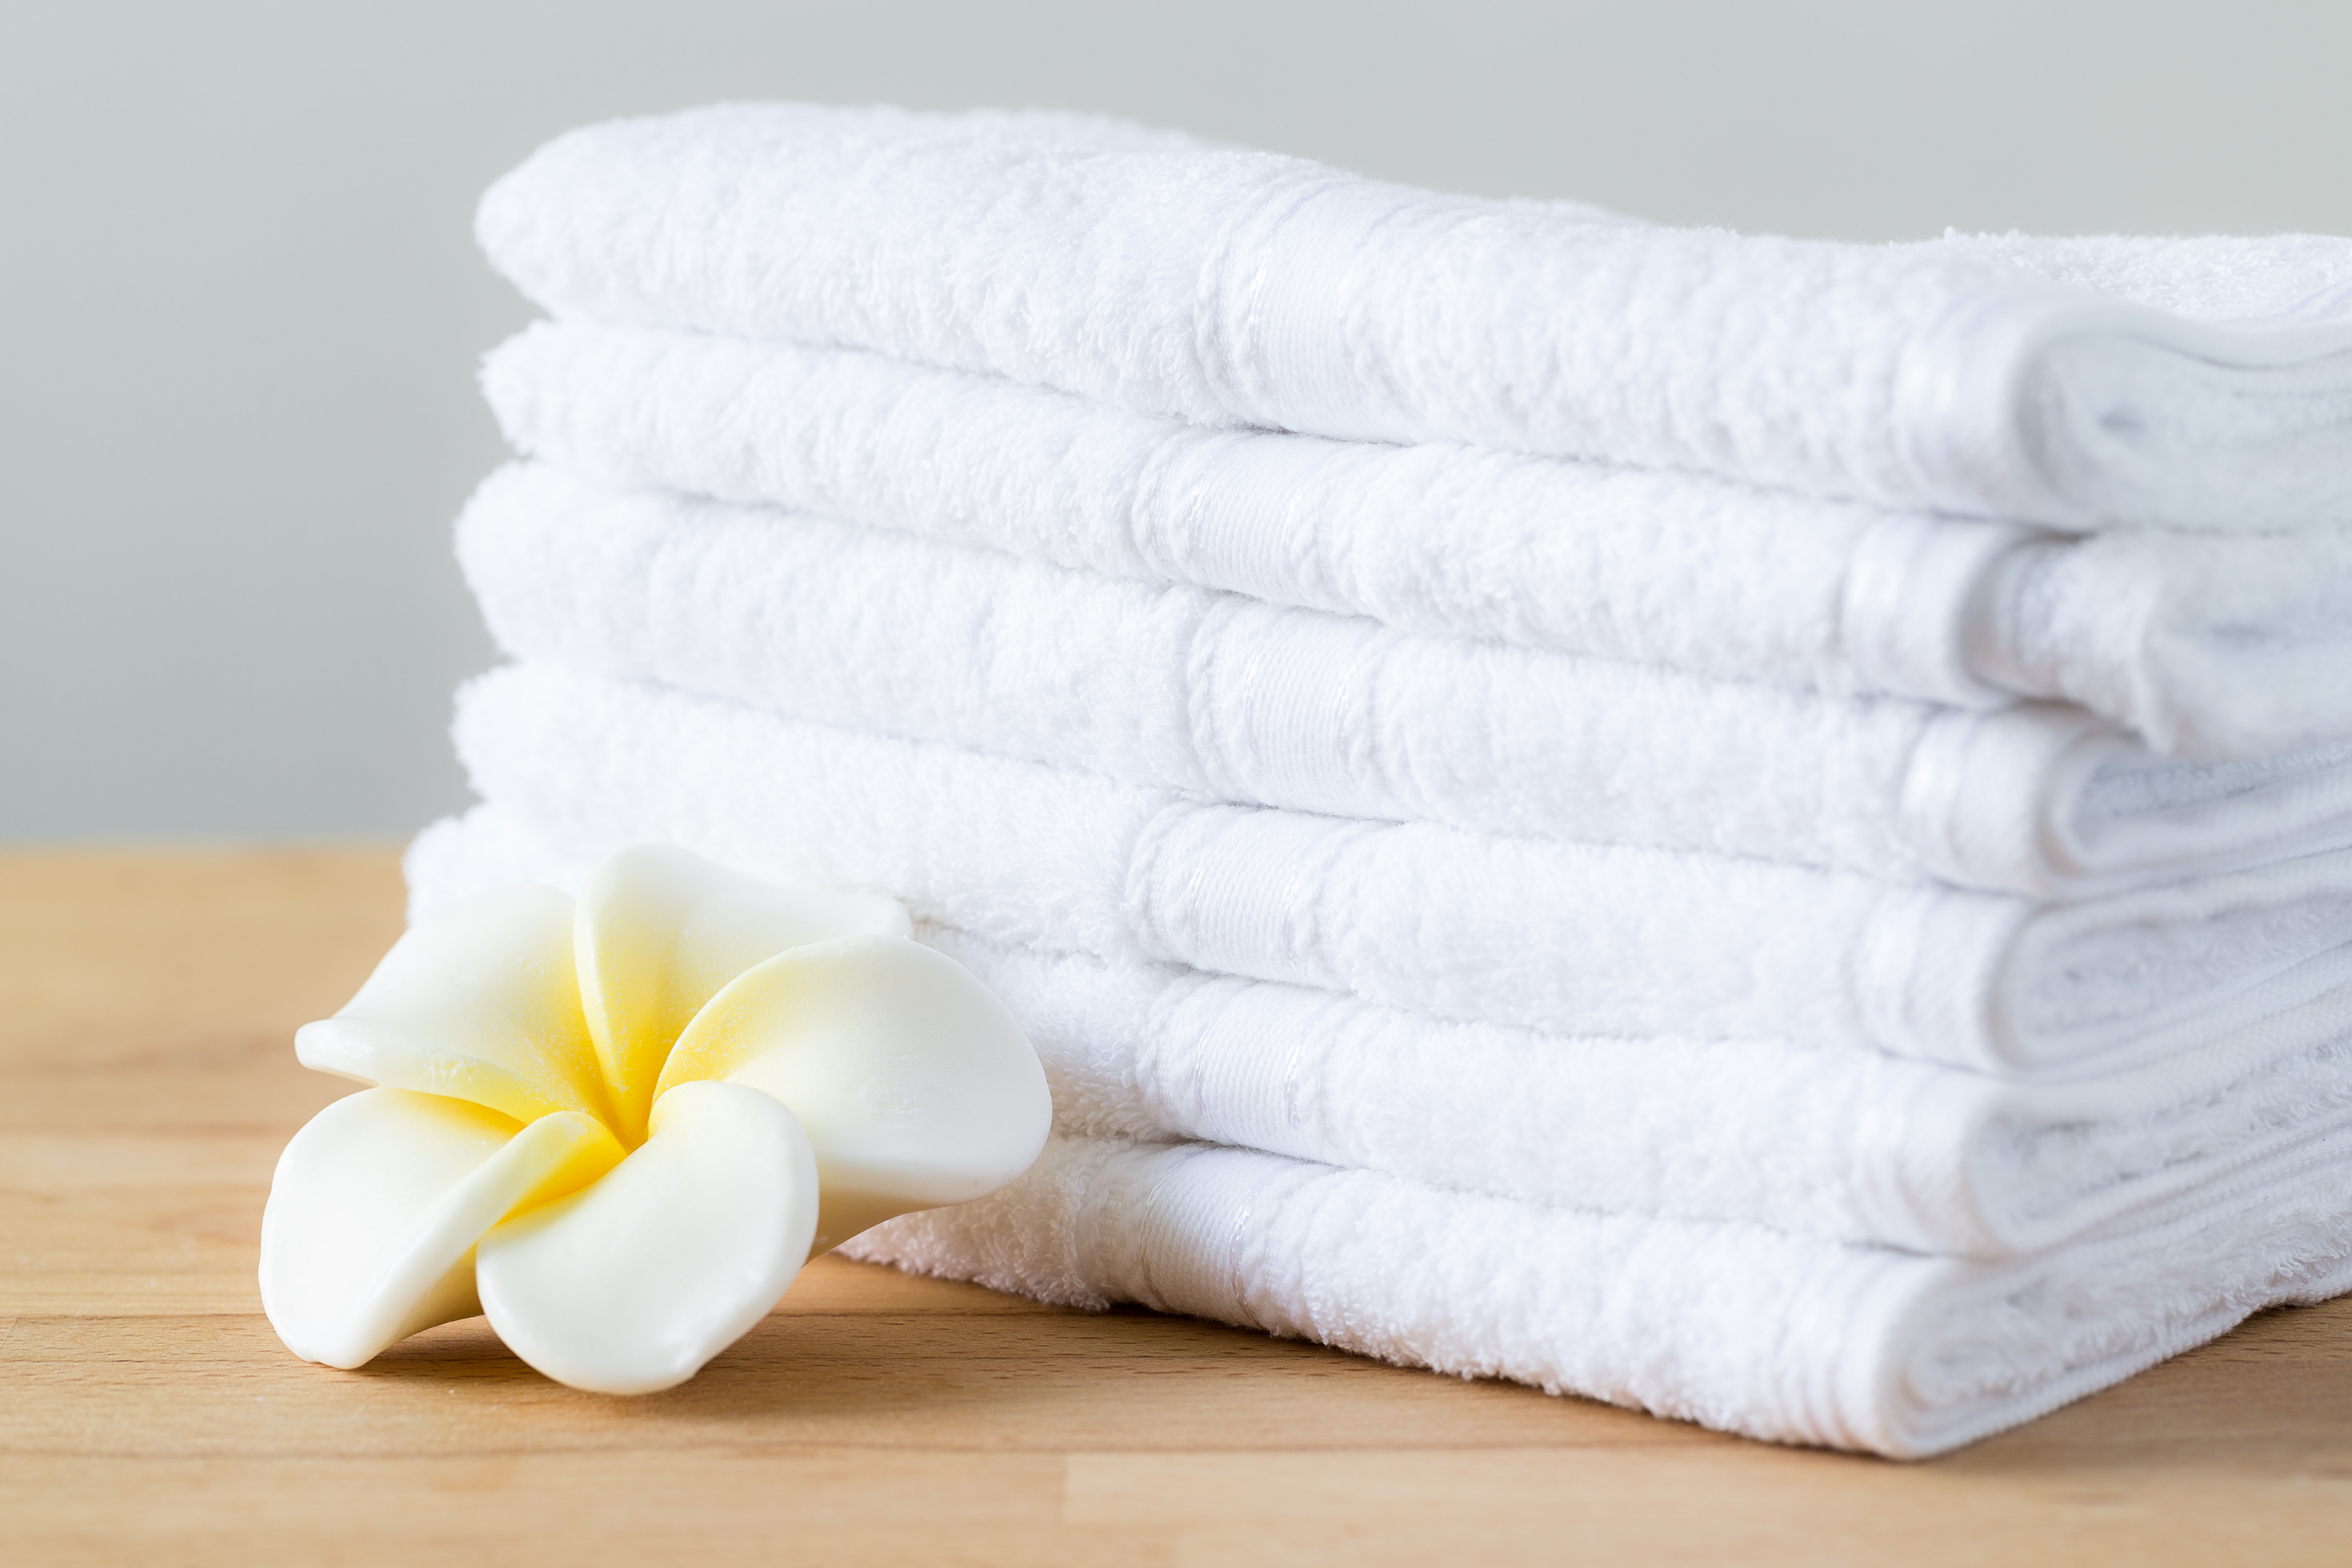 Полотенце на кровати. Чистое белье. Стопка полотенец. Красивые полотенца. Белое полотенце.